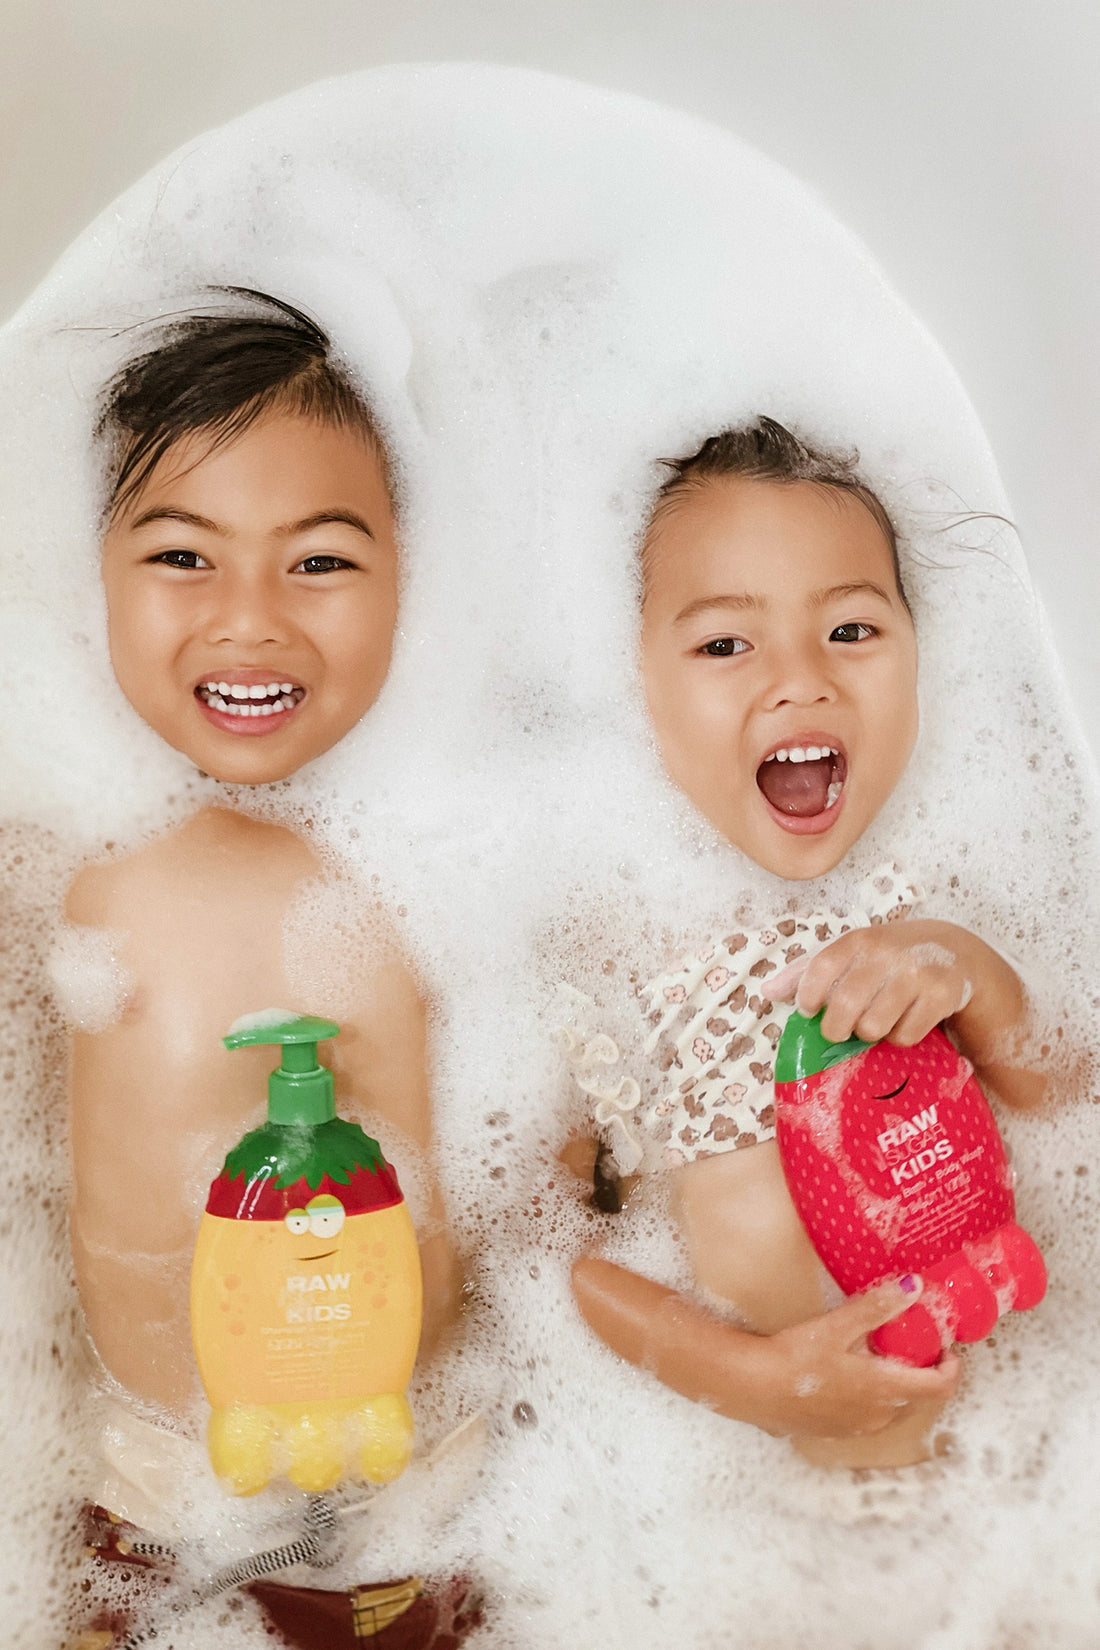 Kids' 2-in-1 Bubble Bath + Body Wash, Strawberry Vanilla